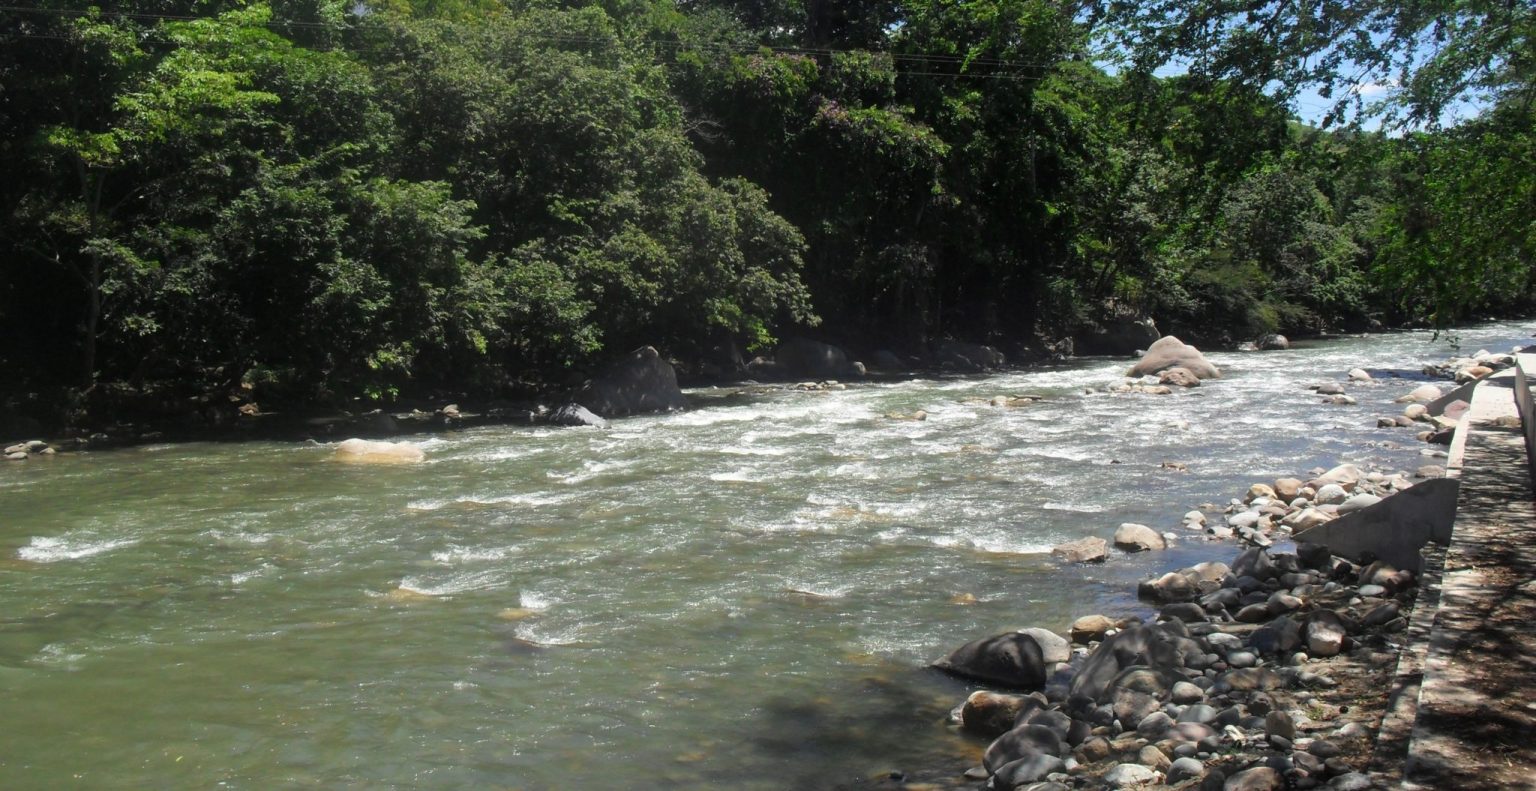 Convenio-río santiago-partidero-jalisco-felipe cobián rosales-contaminación-enrique alfaro ramírez-macroexcursión